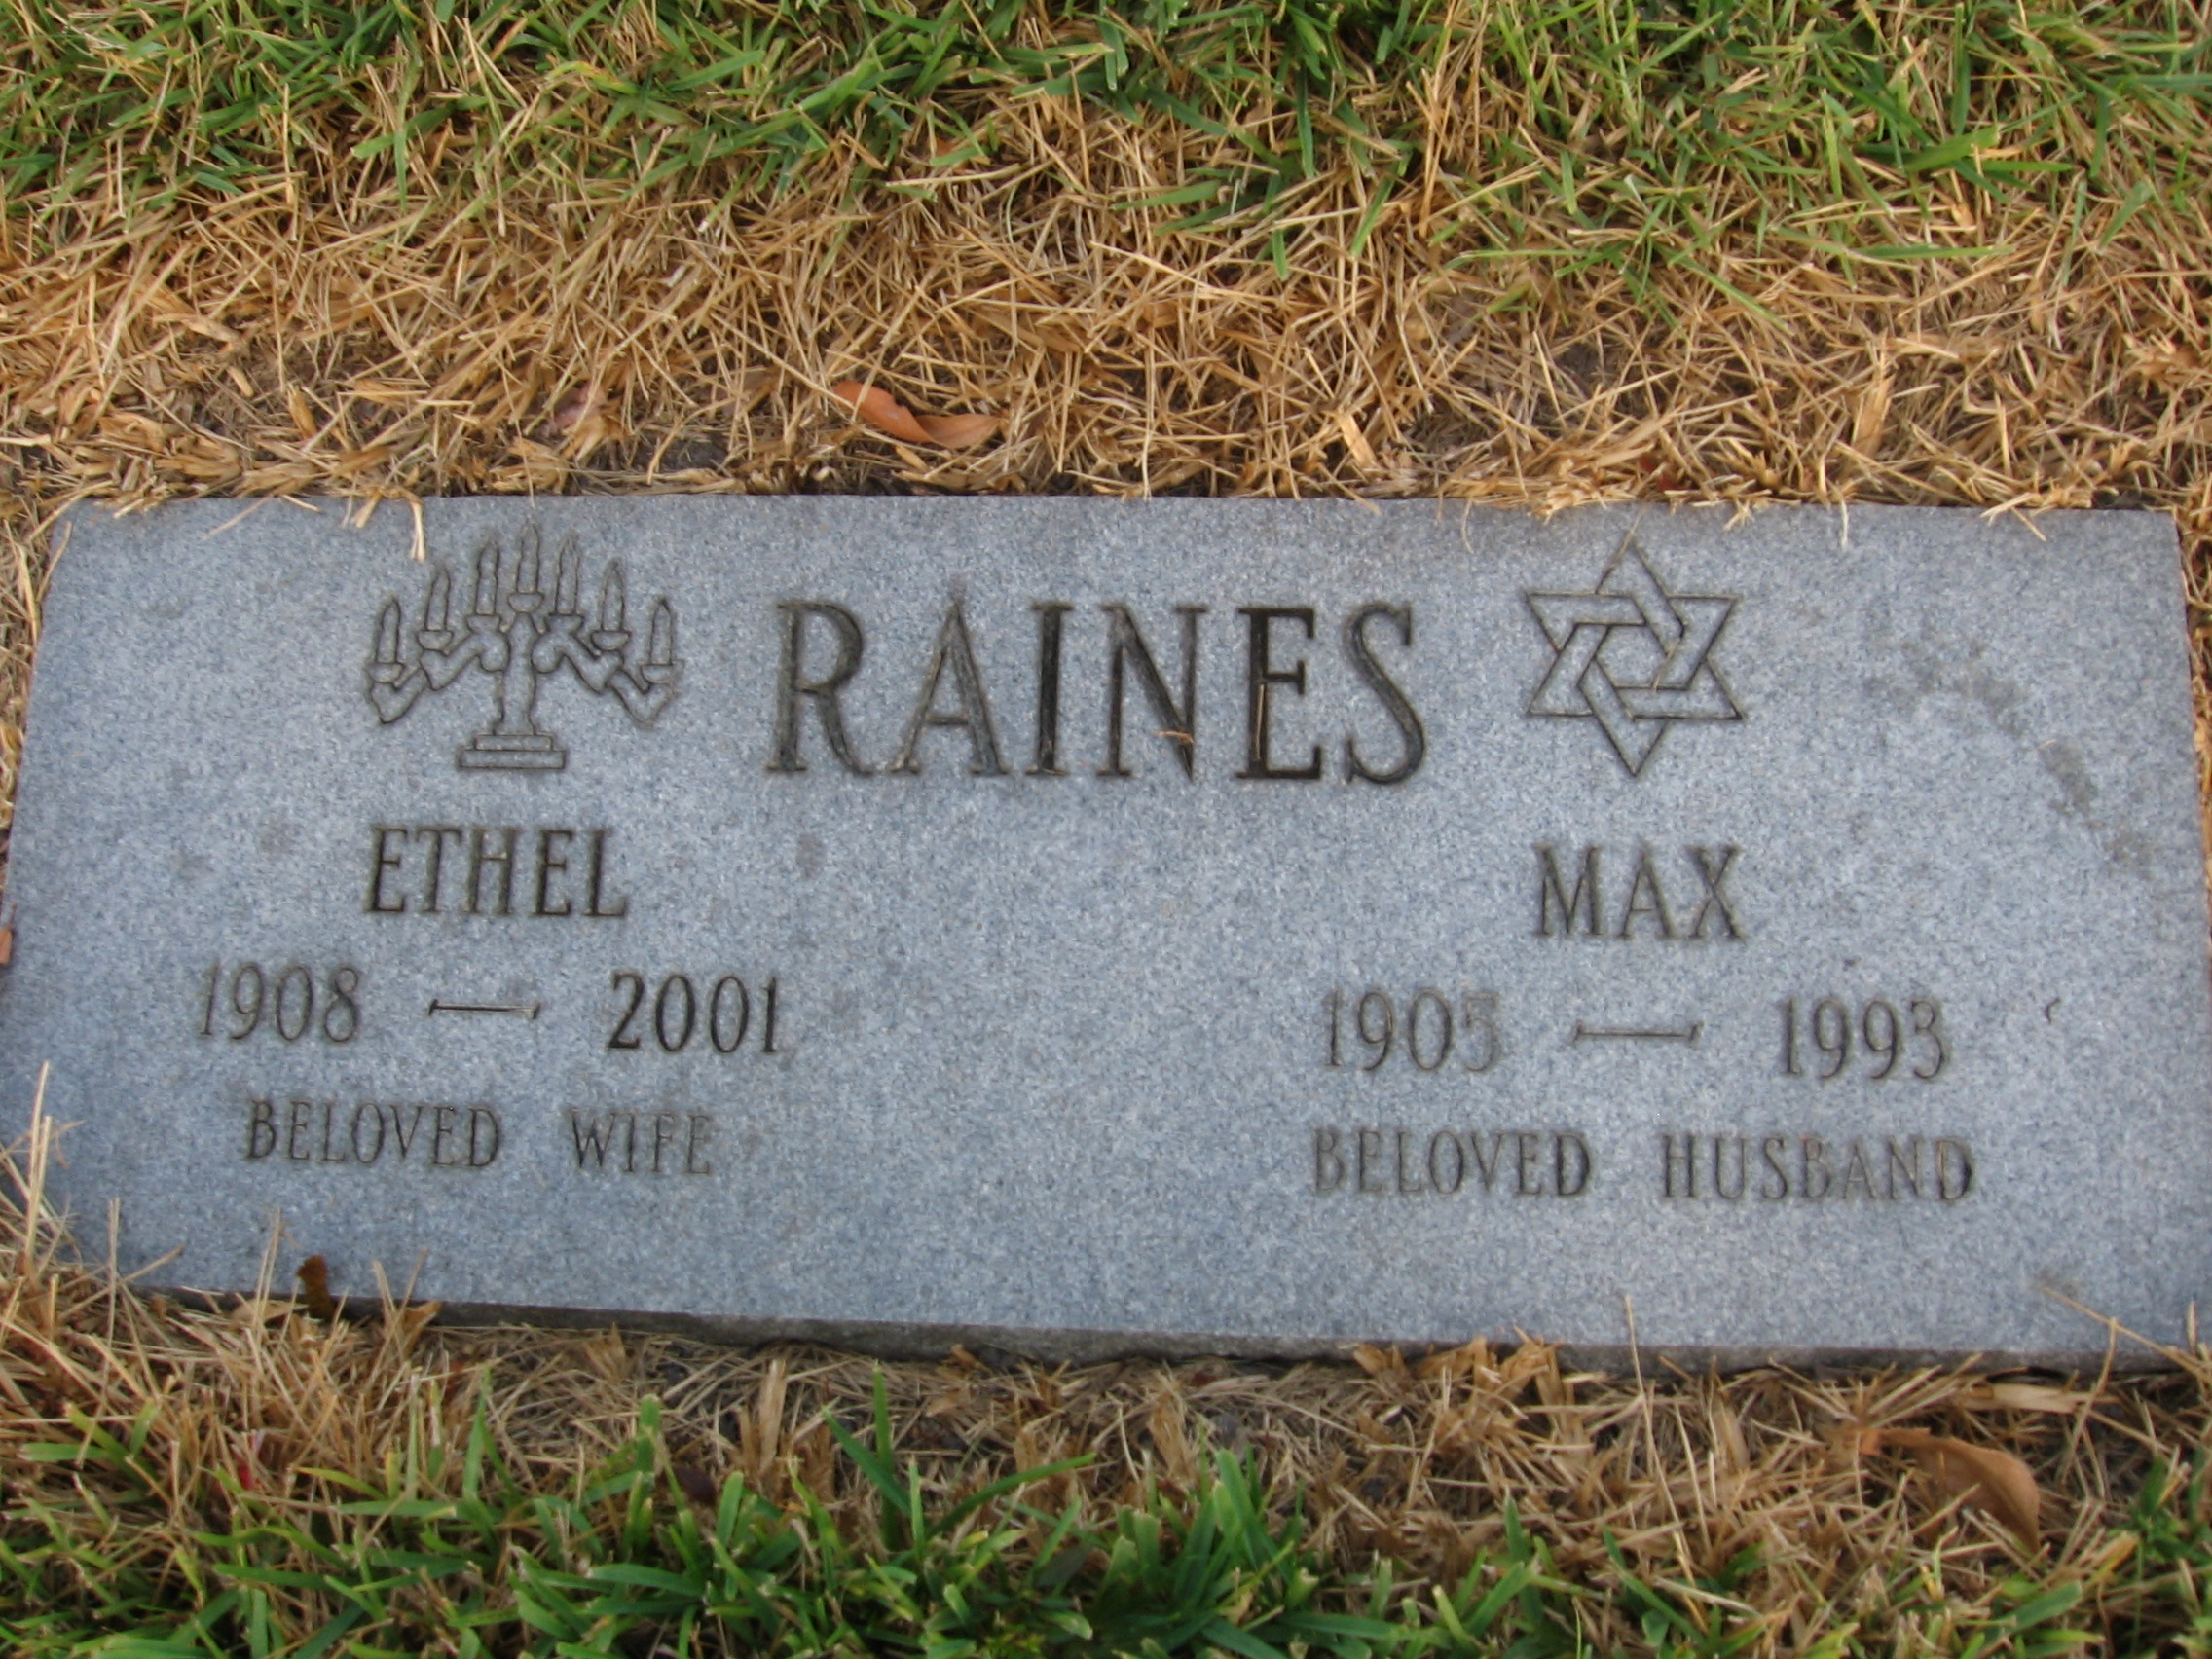 Ethel Raines